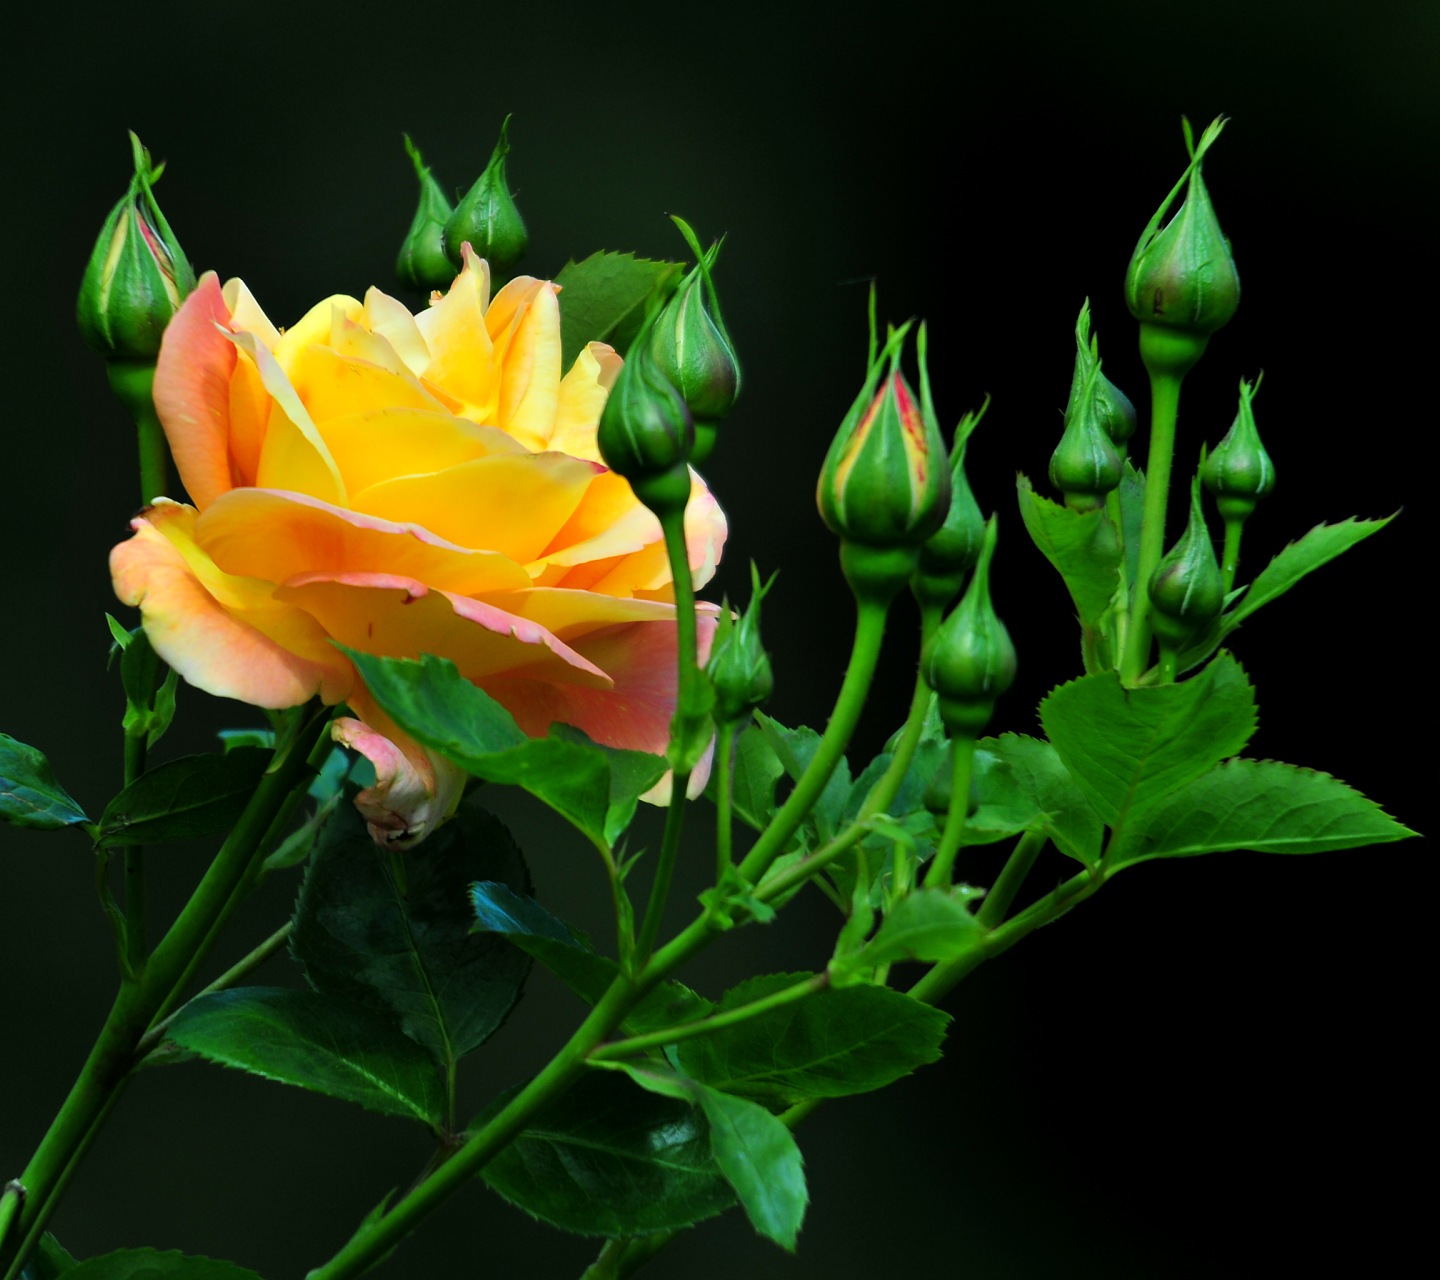 Descargar Fondos De Pantalla Naturaleza Hd Widescreen - Yellow Rose , HD Wallpaper & Backgrounds